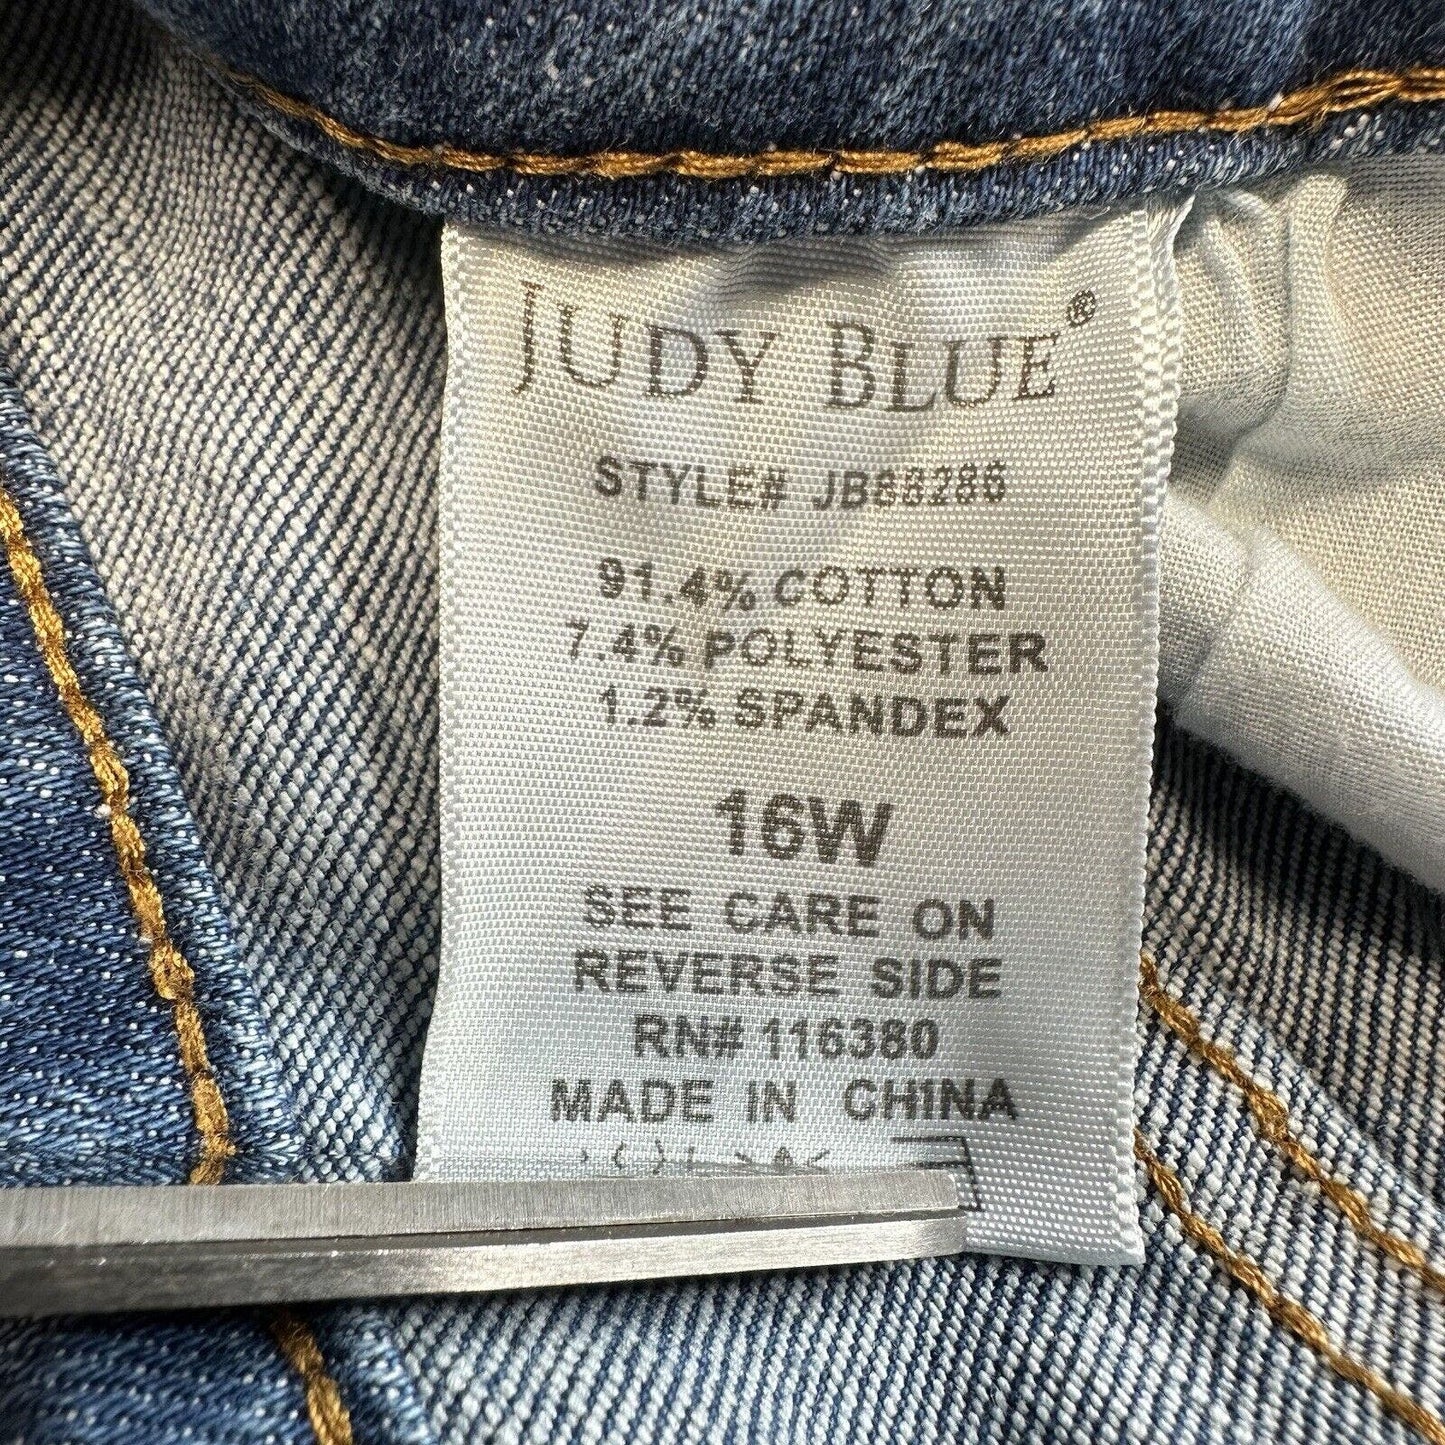 Judy Blue Jeans Womens 16W Skinny High Waist Stretch Denim Rainbow Embroidery